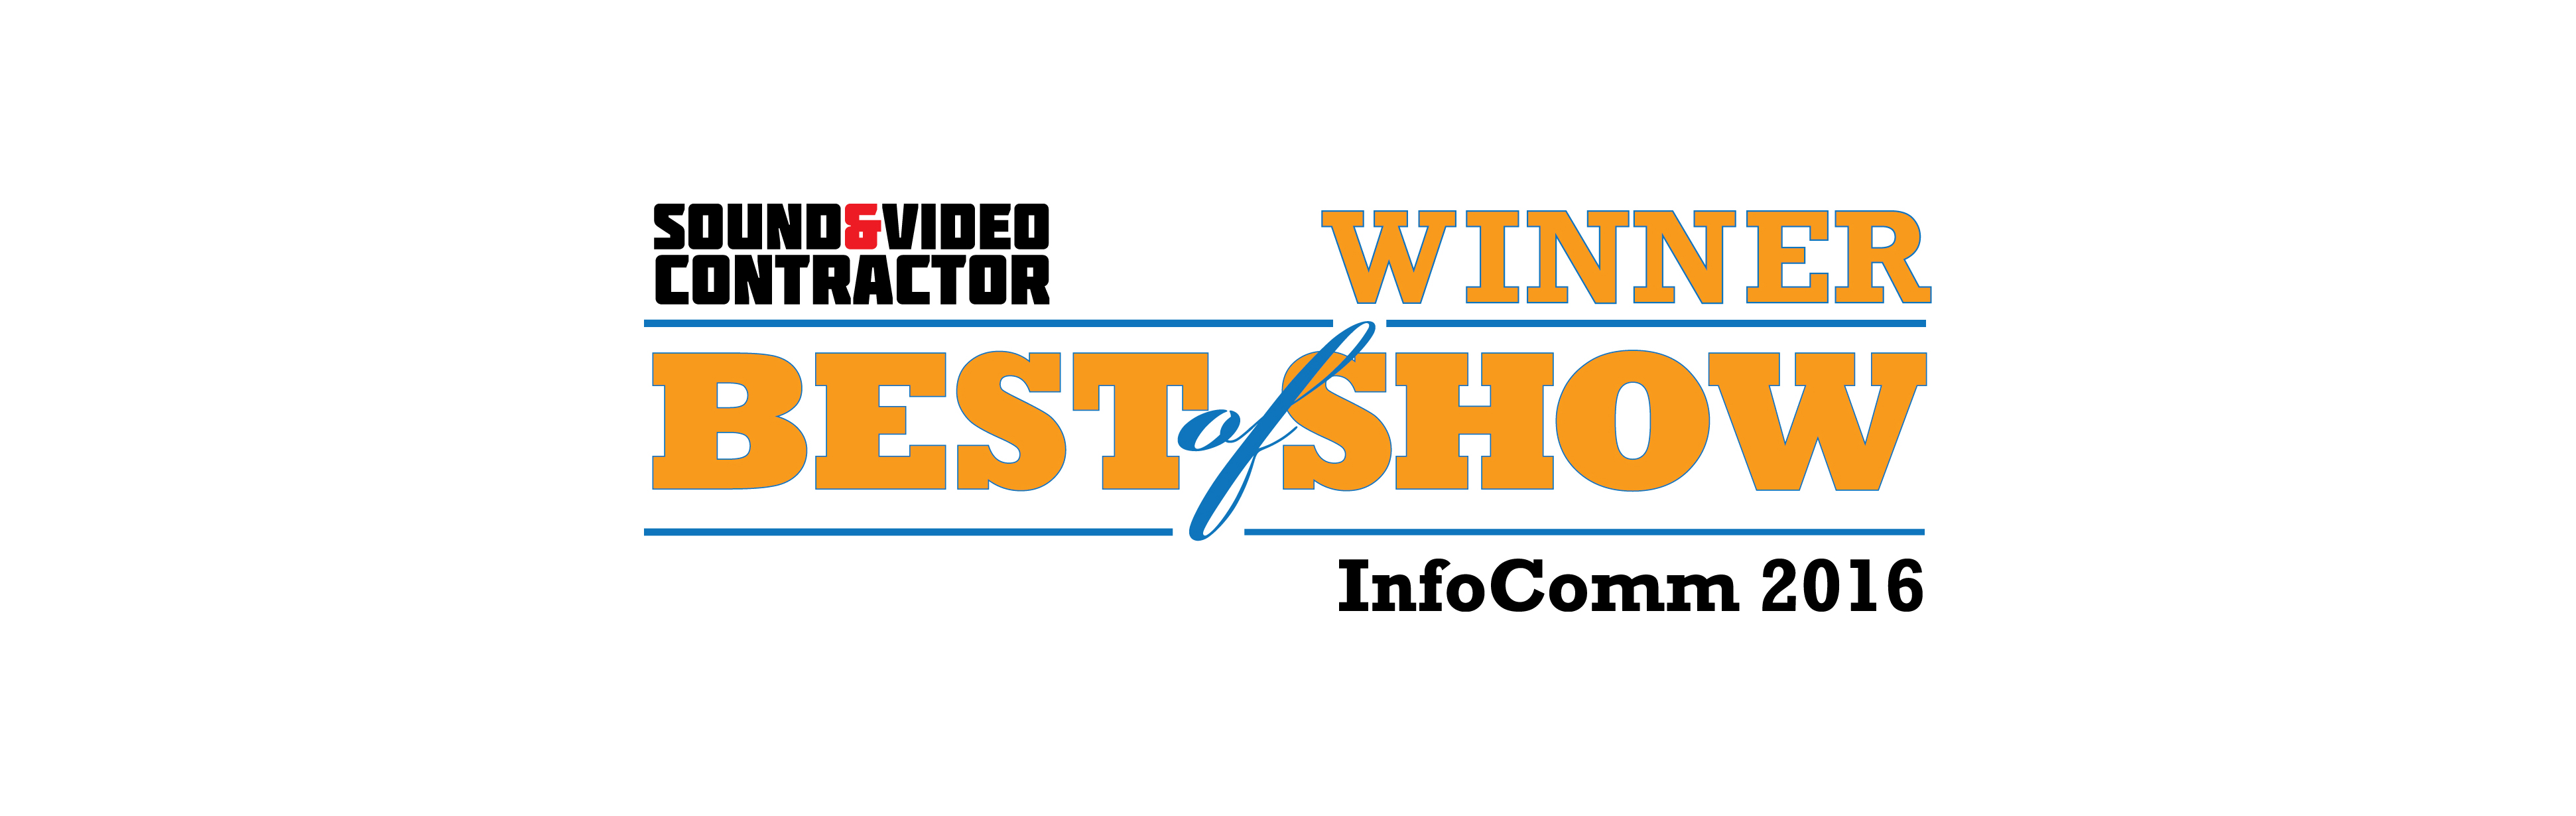 Infocomm 2016 Best of show award